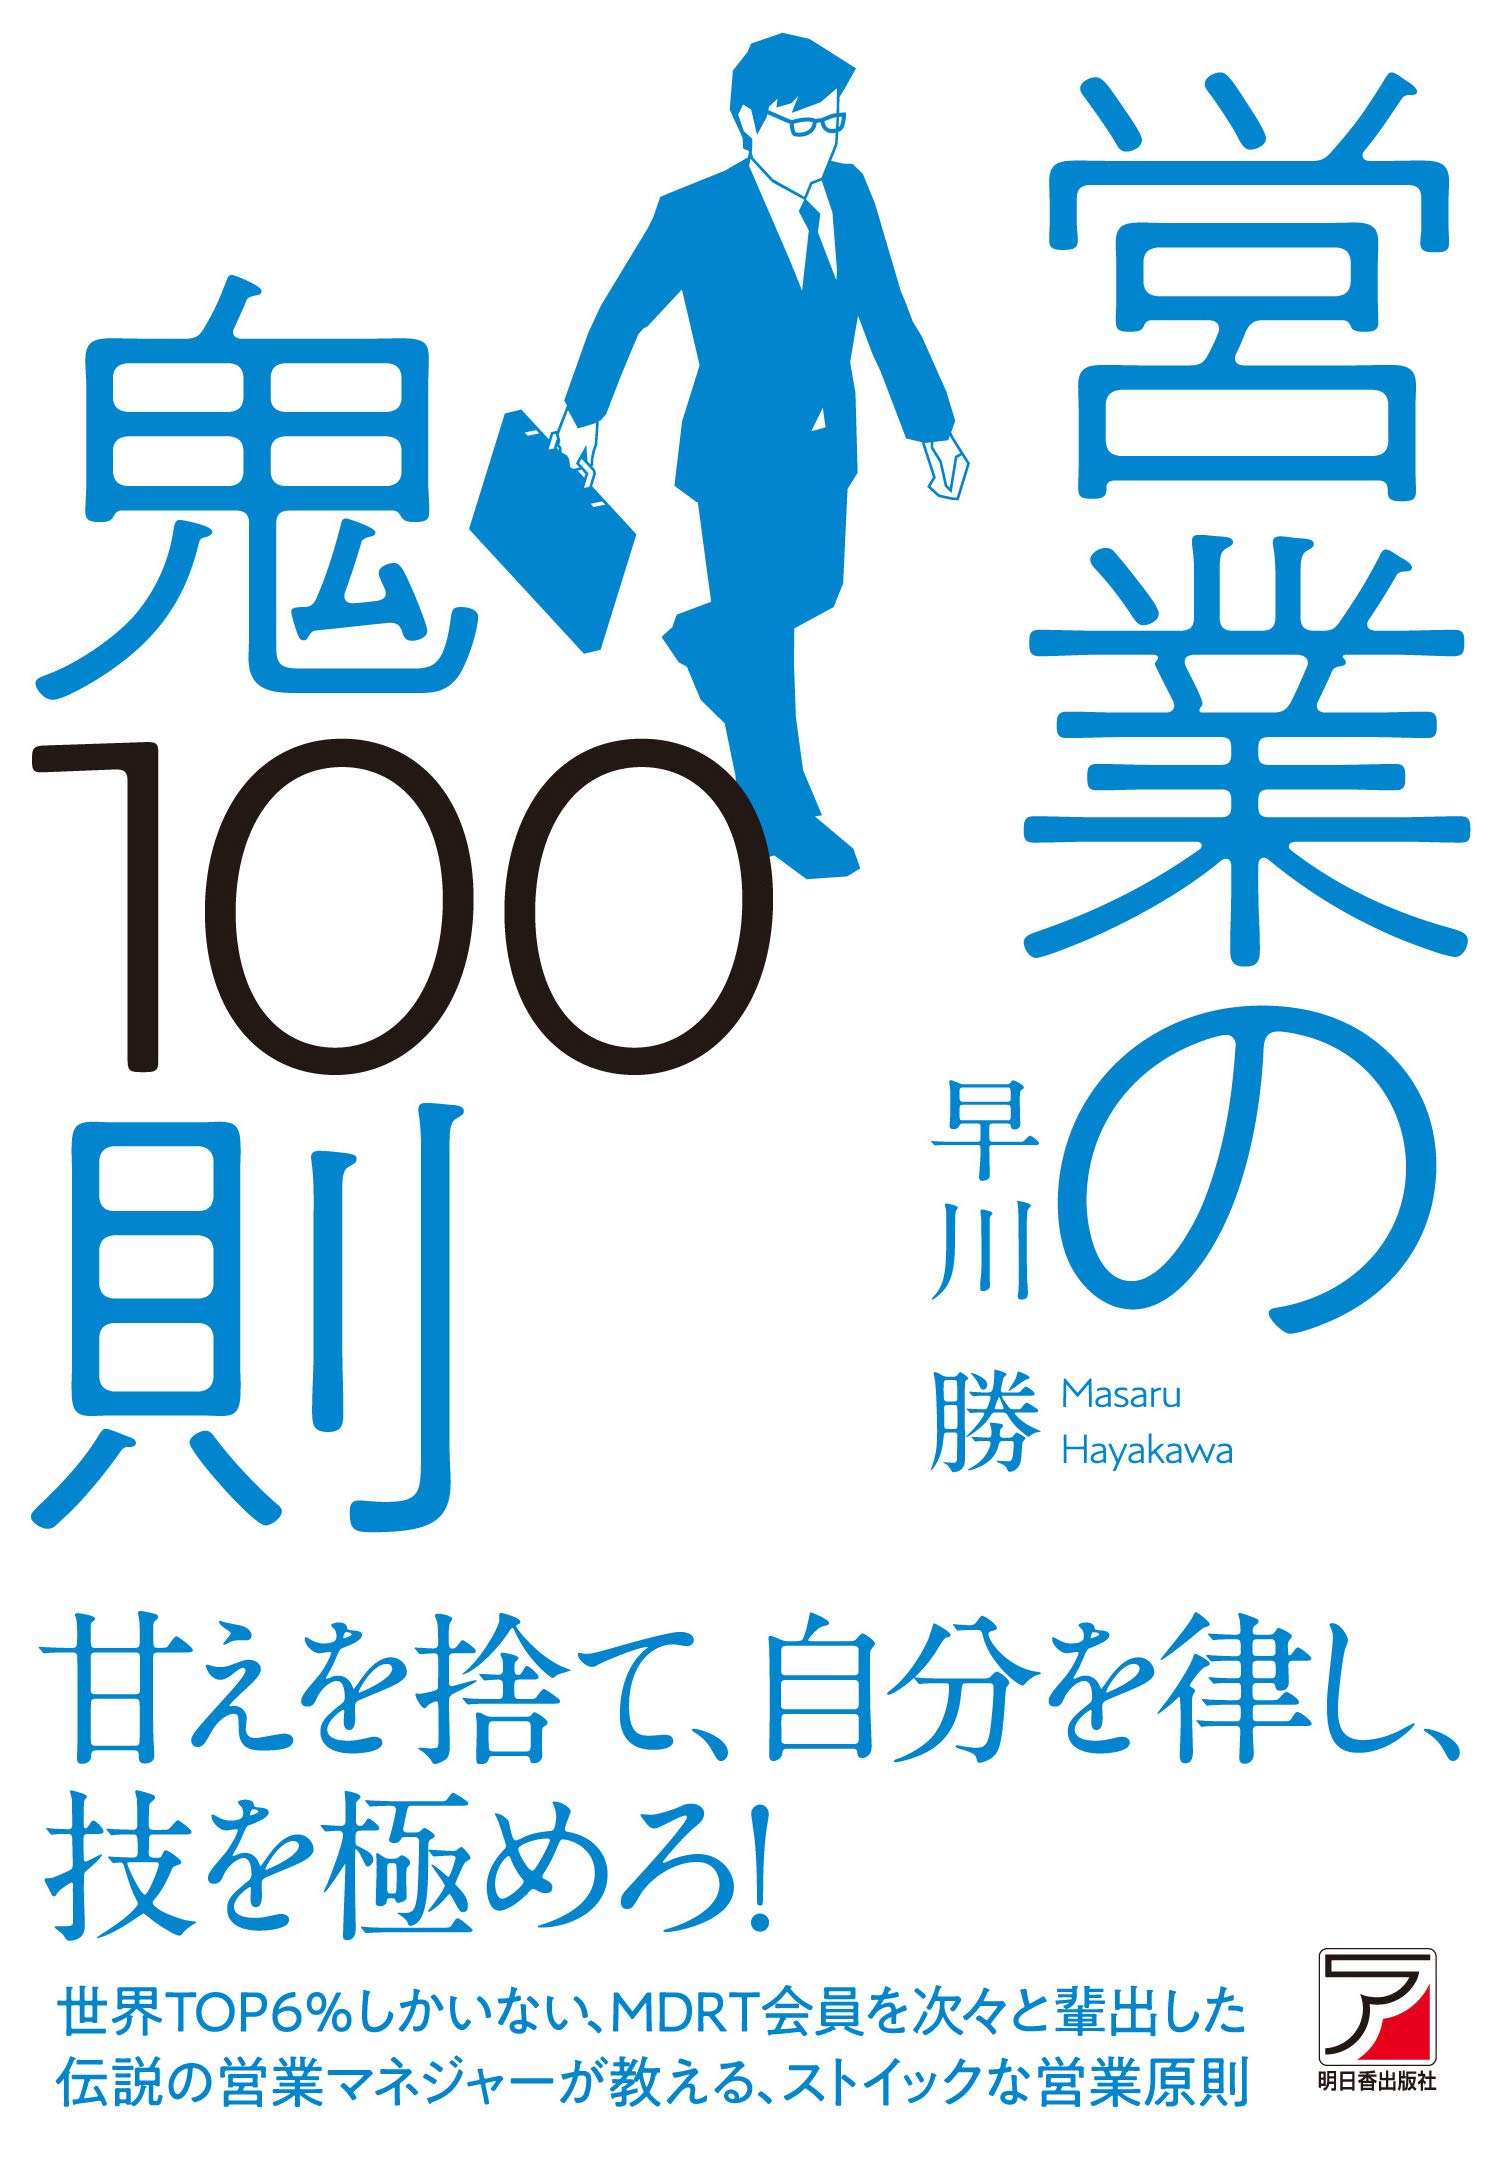 19年 椎名林檎おすすめの曲ランキング10 Bookcase